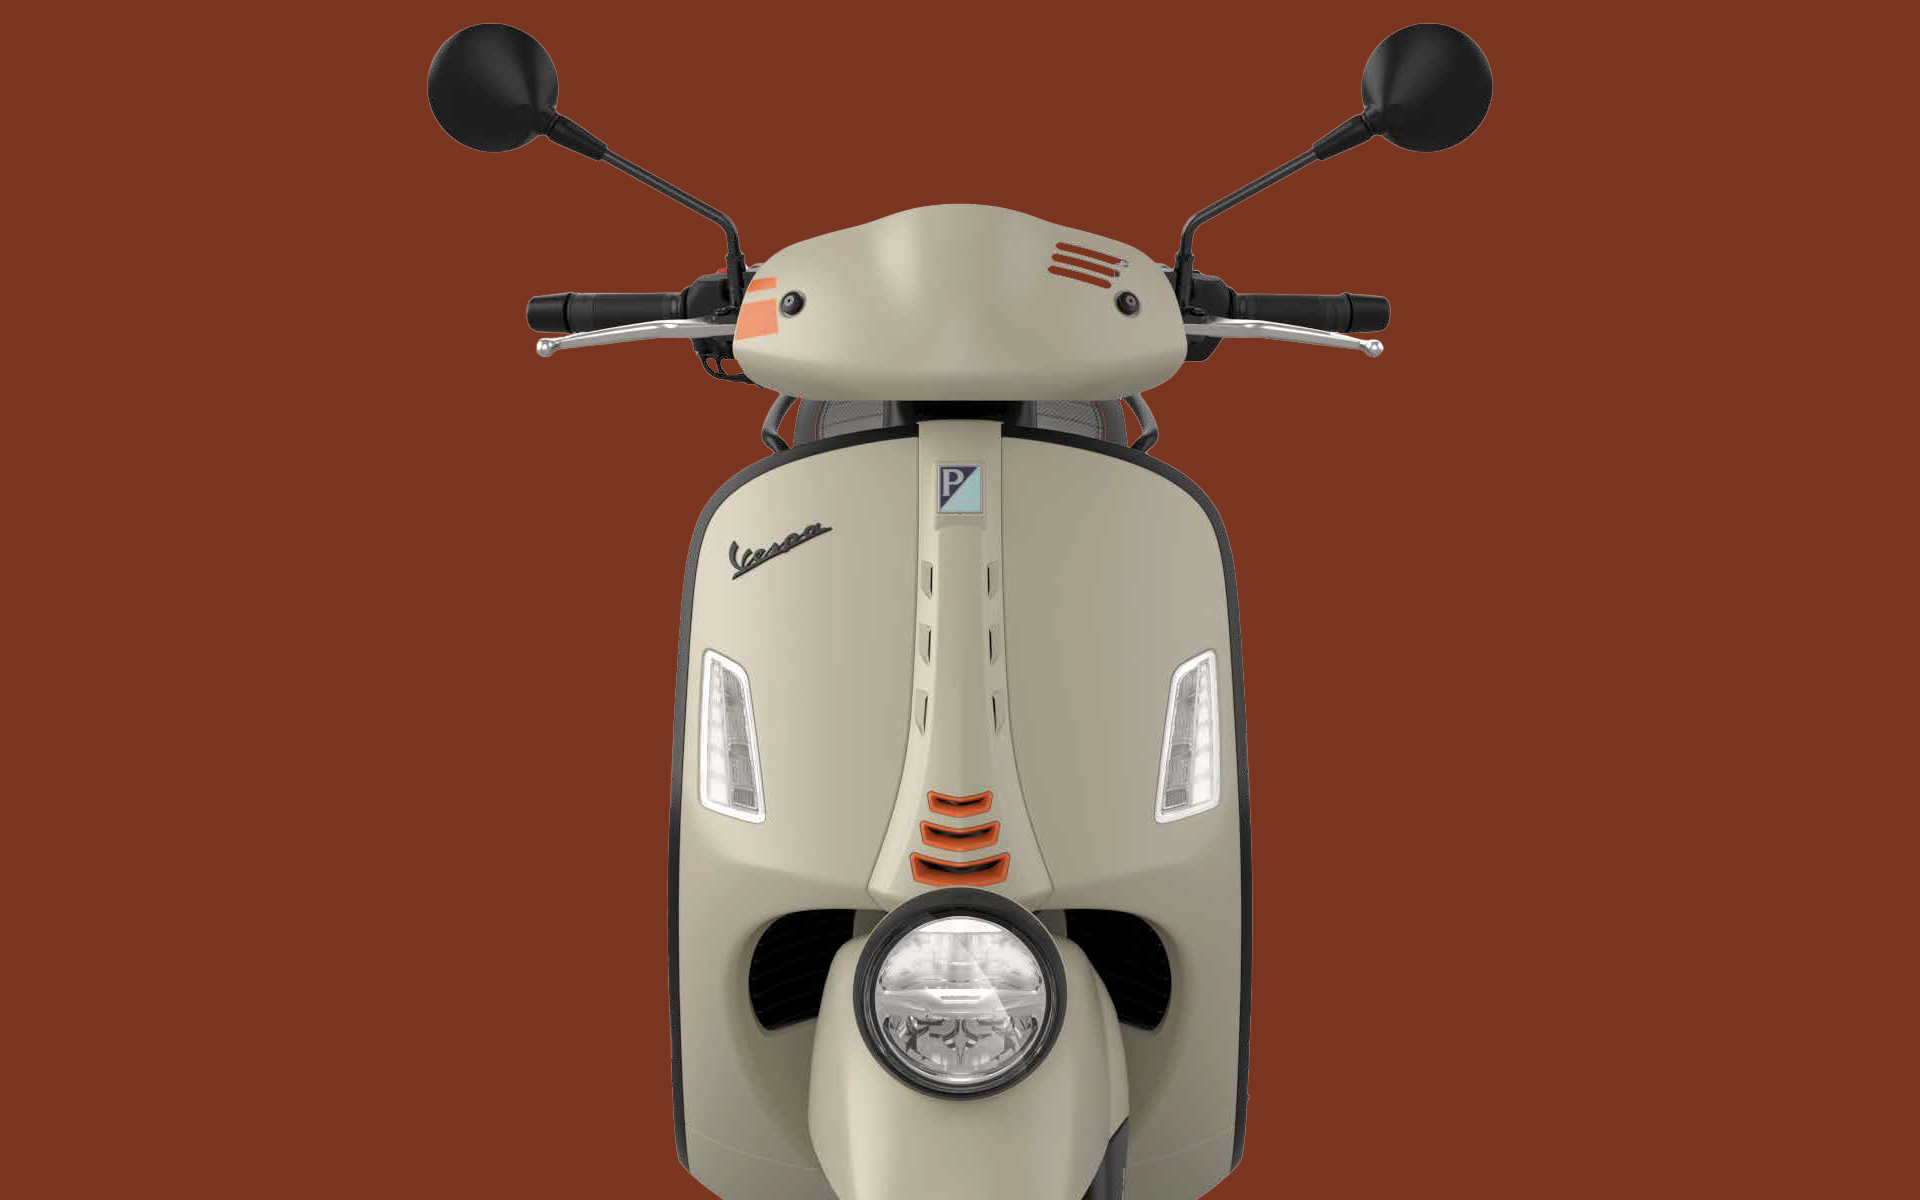 ShopbijStef - Mini scooter - Mini scooter électrique - Vespa